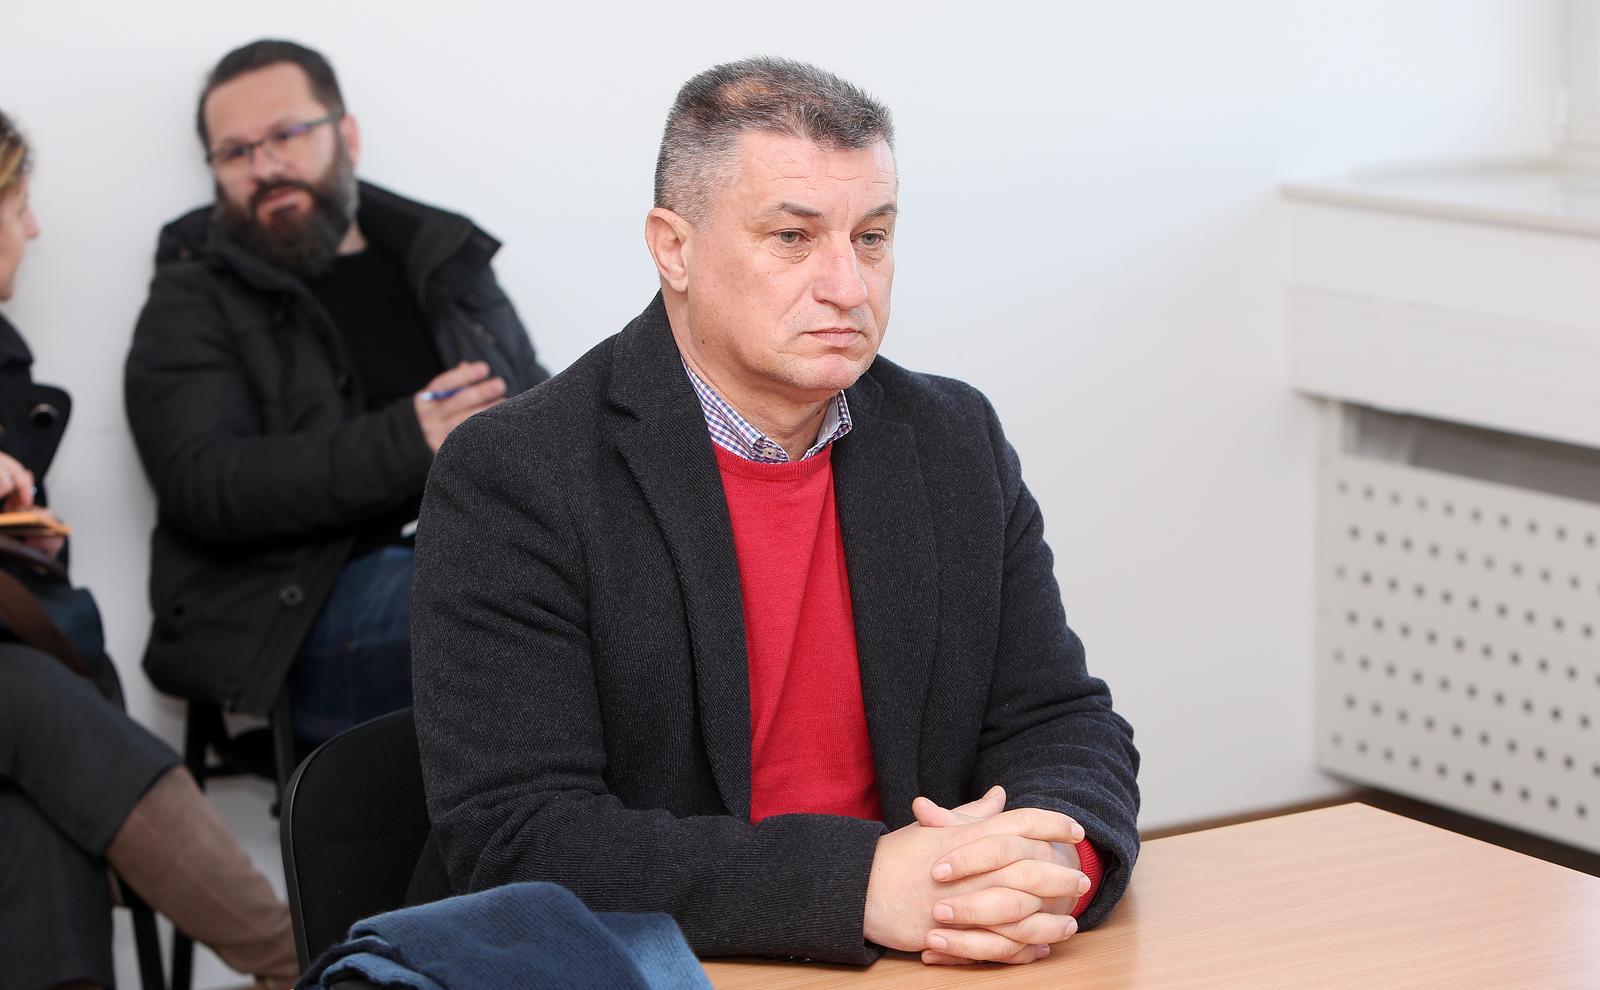 Skandal u susjedstvu: Bivšem HDZ-ovom načelniku kazna za silovanje smanjena zato što je "odlikovani branitelj"